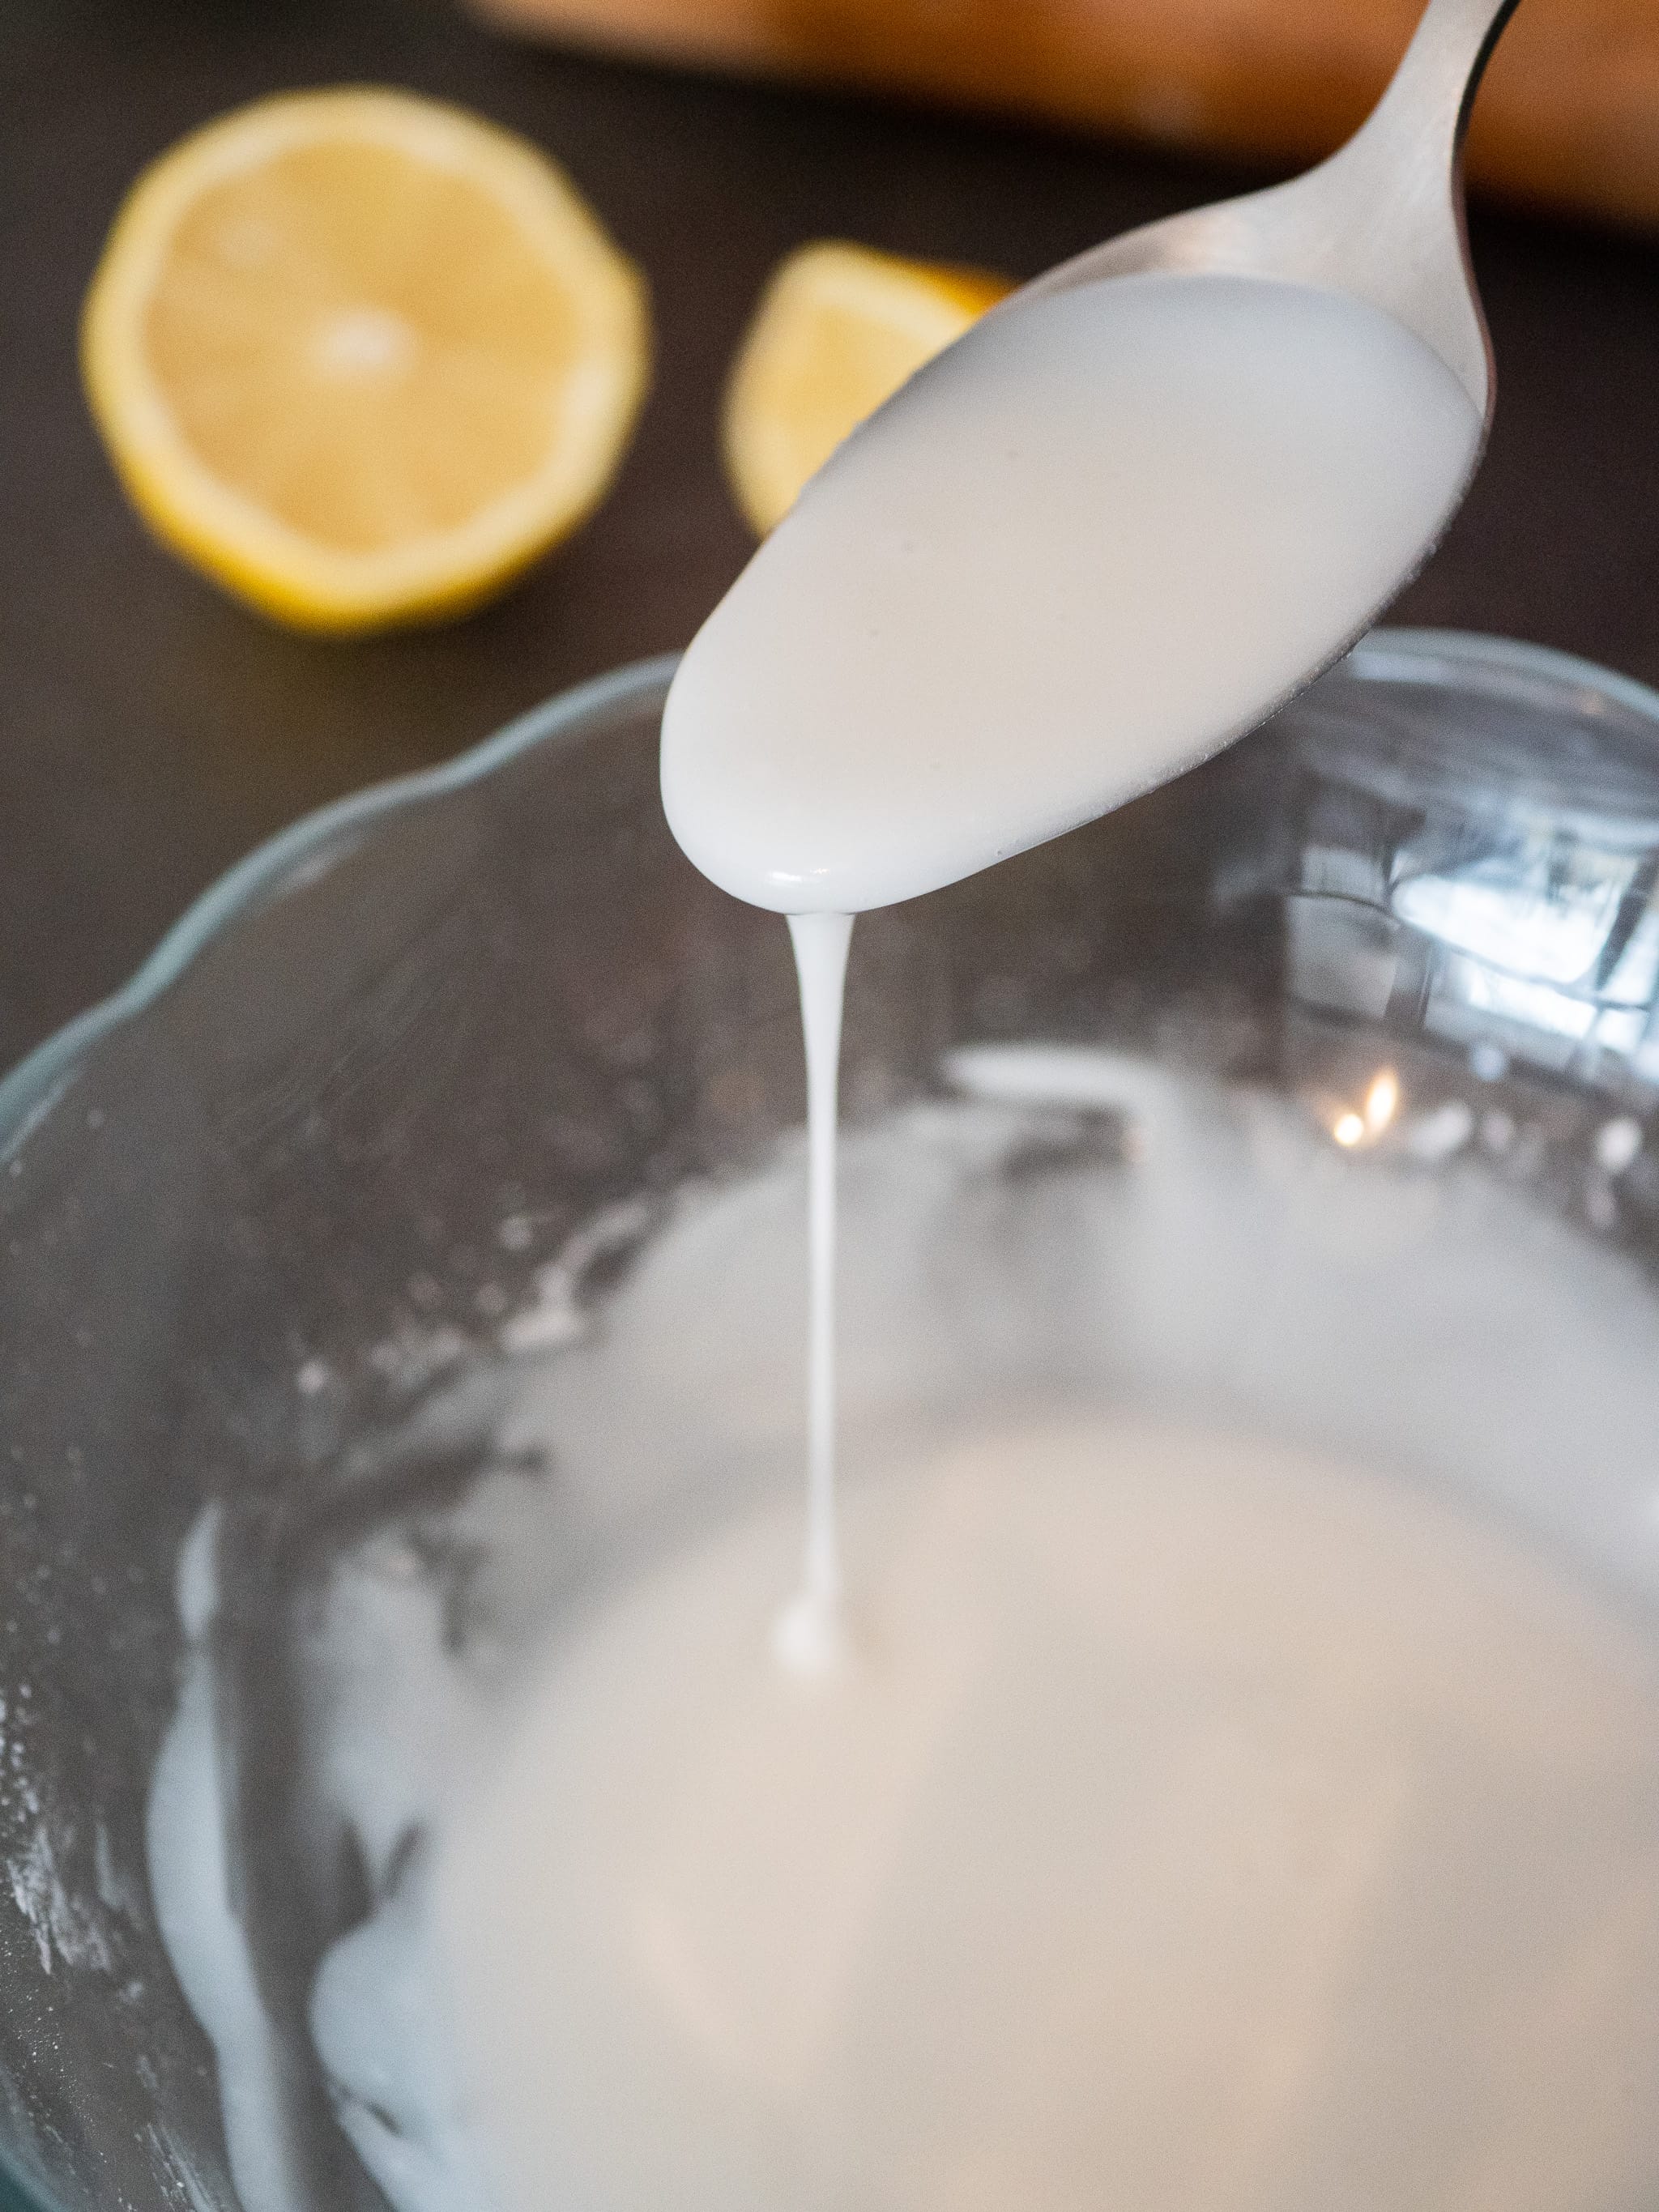 comment faire un glacage vegan facile avec de l'eau du sucre glace et du citron